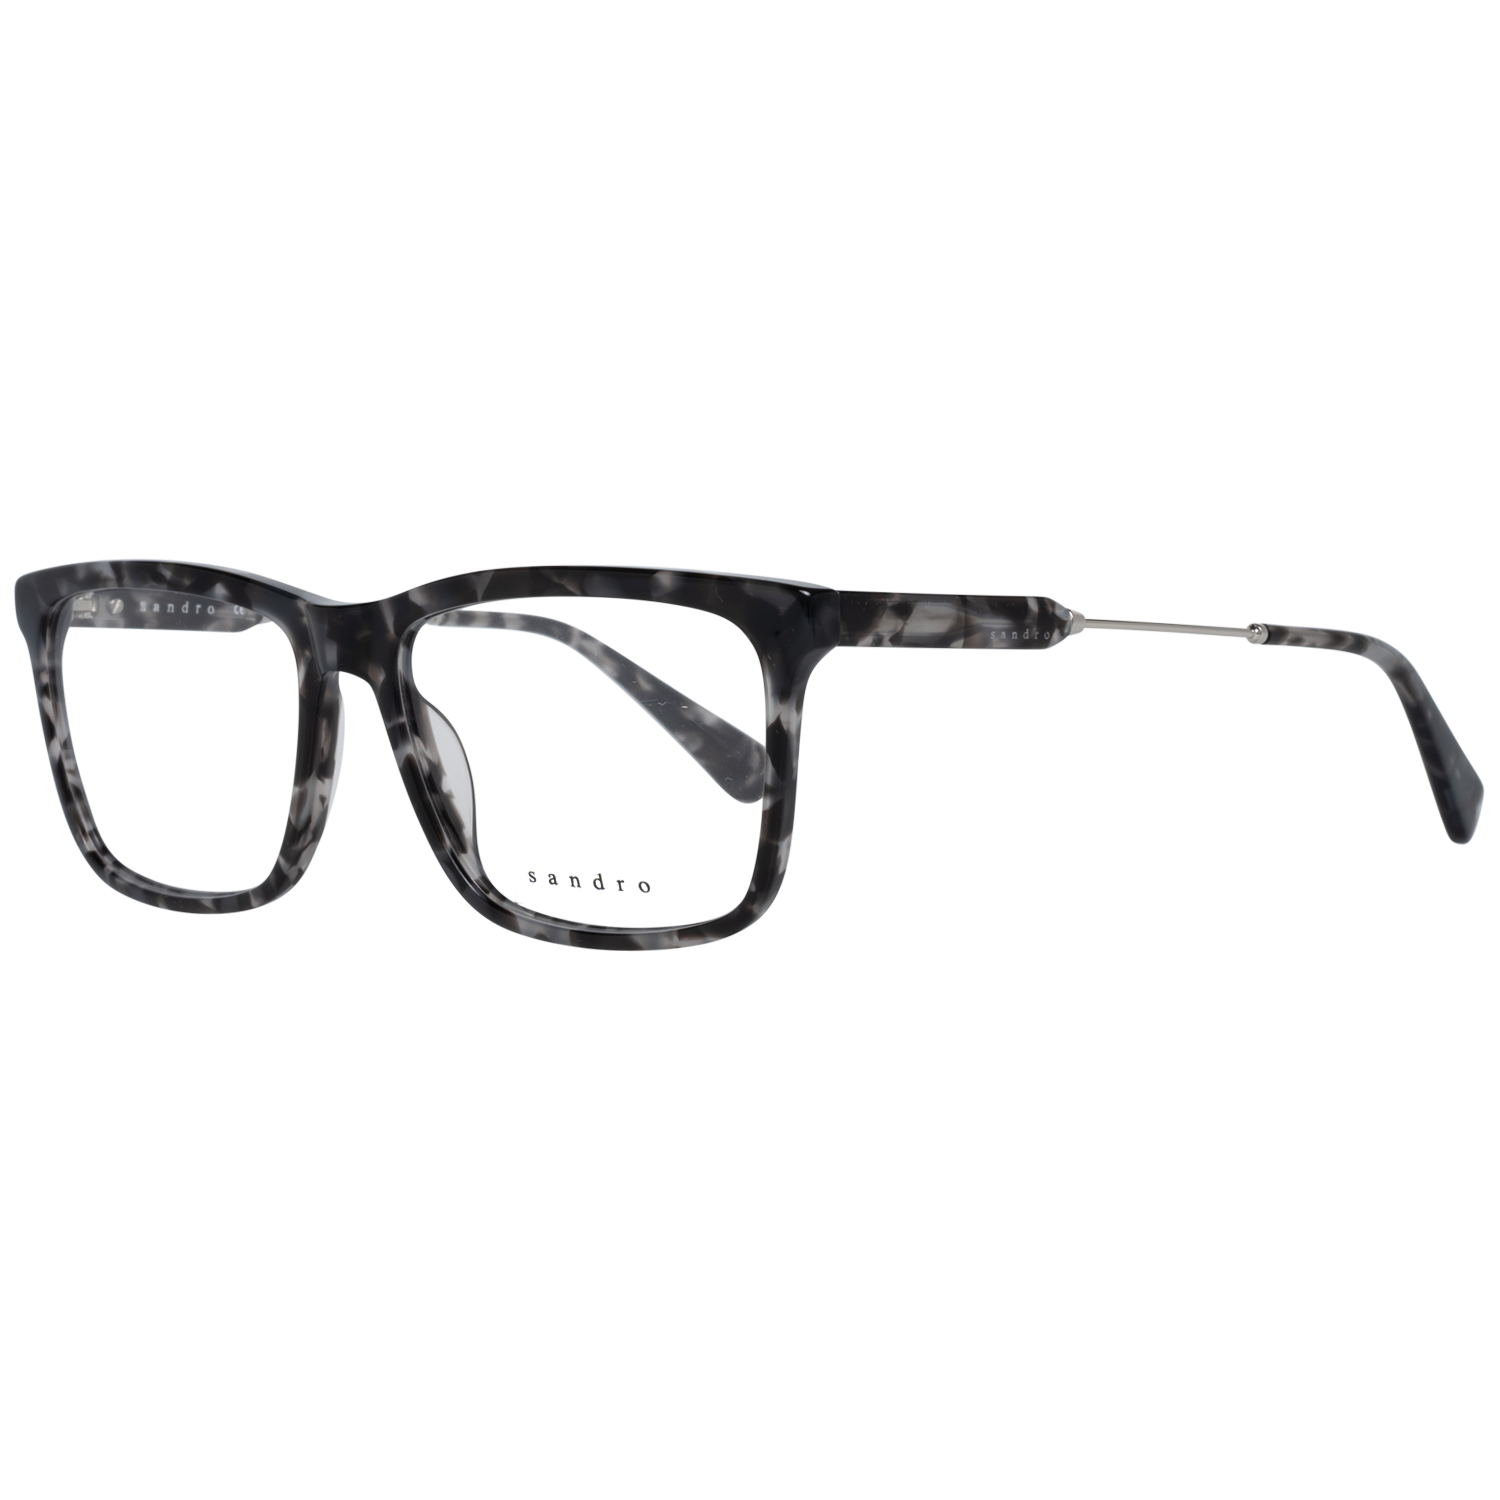 Sandro Frames Sandro Optical Frame SD1009 208 56 Eyeglasses Eyewear UK USA Australia 